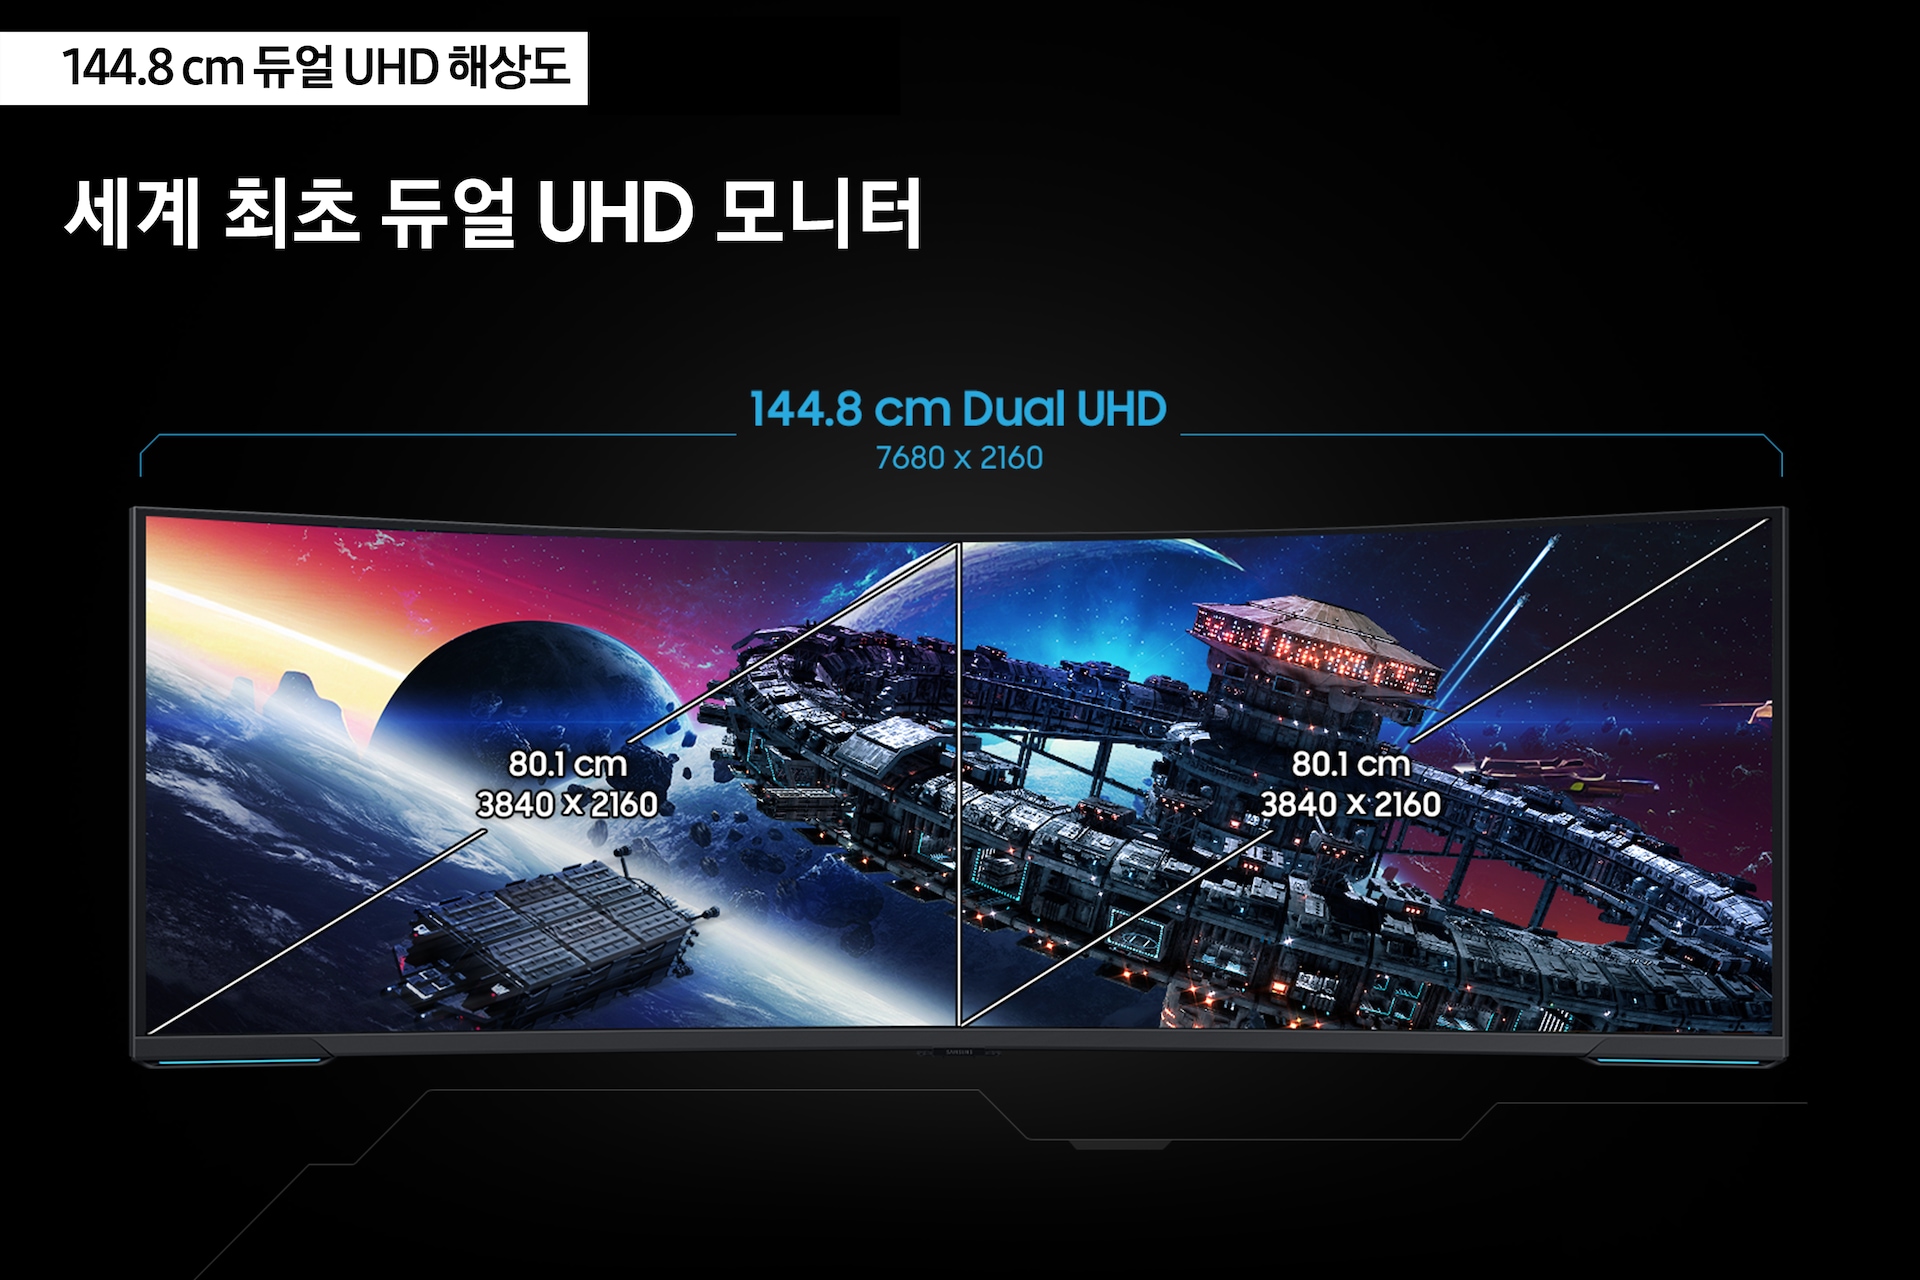 게이밍모니터 오디세이 Neo G95NC (144.8 cm) 세게 최초 듀얼 UHD 모니터